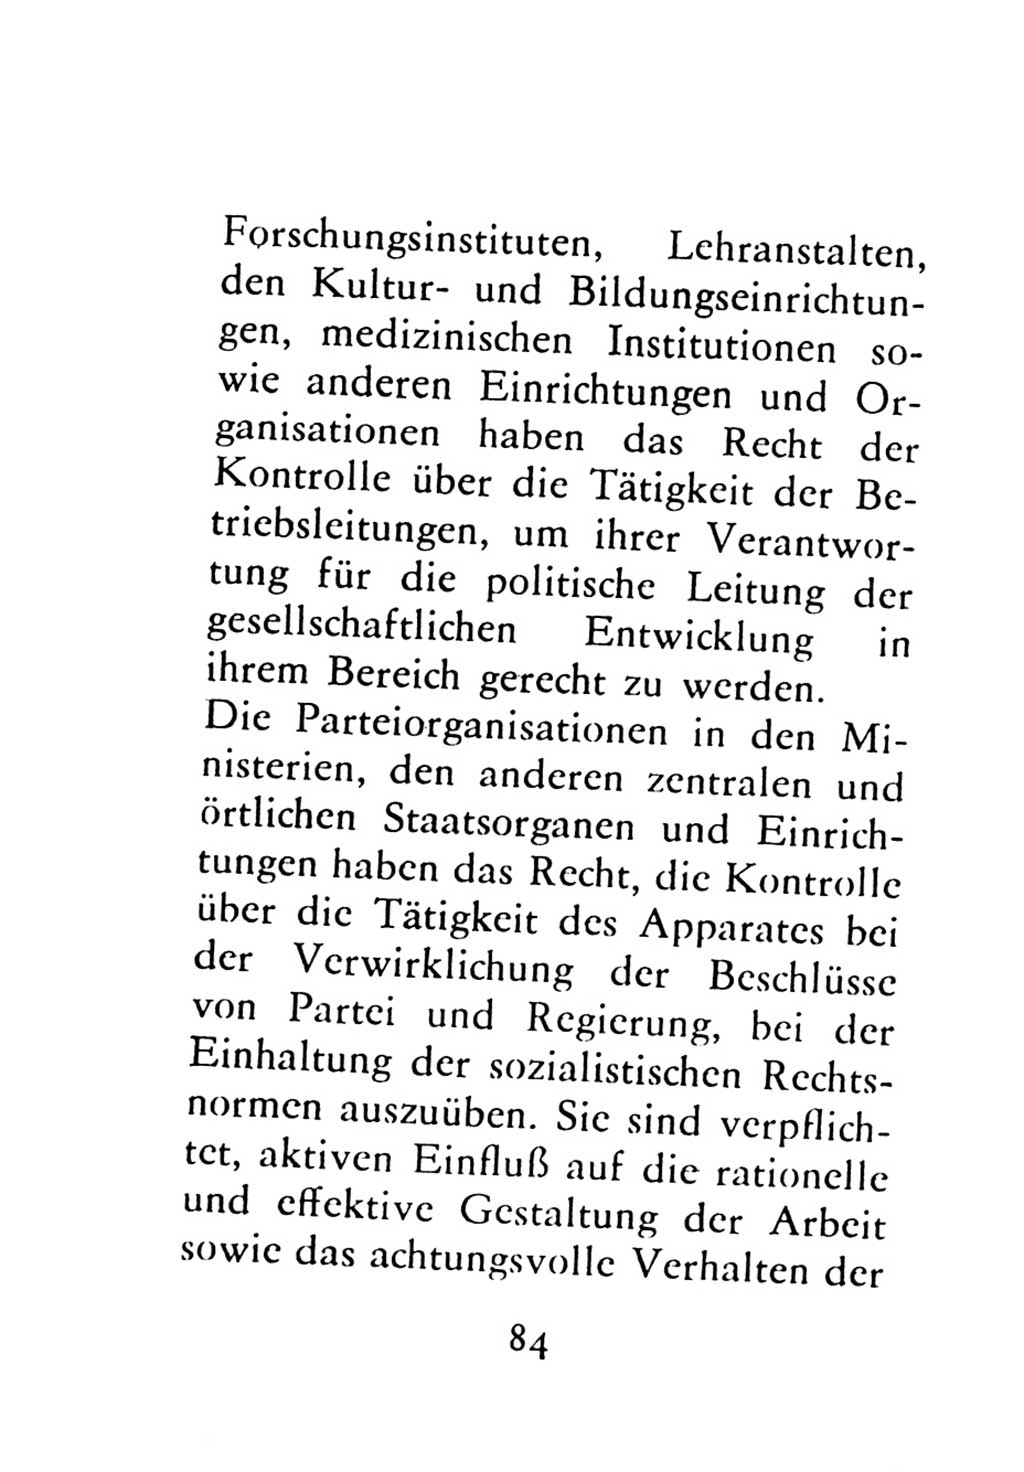 Statut der Sozialistischen Einheitspartei Deutschlands (SED) 1976, Seite 84 (St. SED DDR 1976, S. 84)